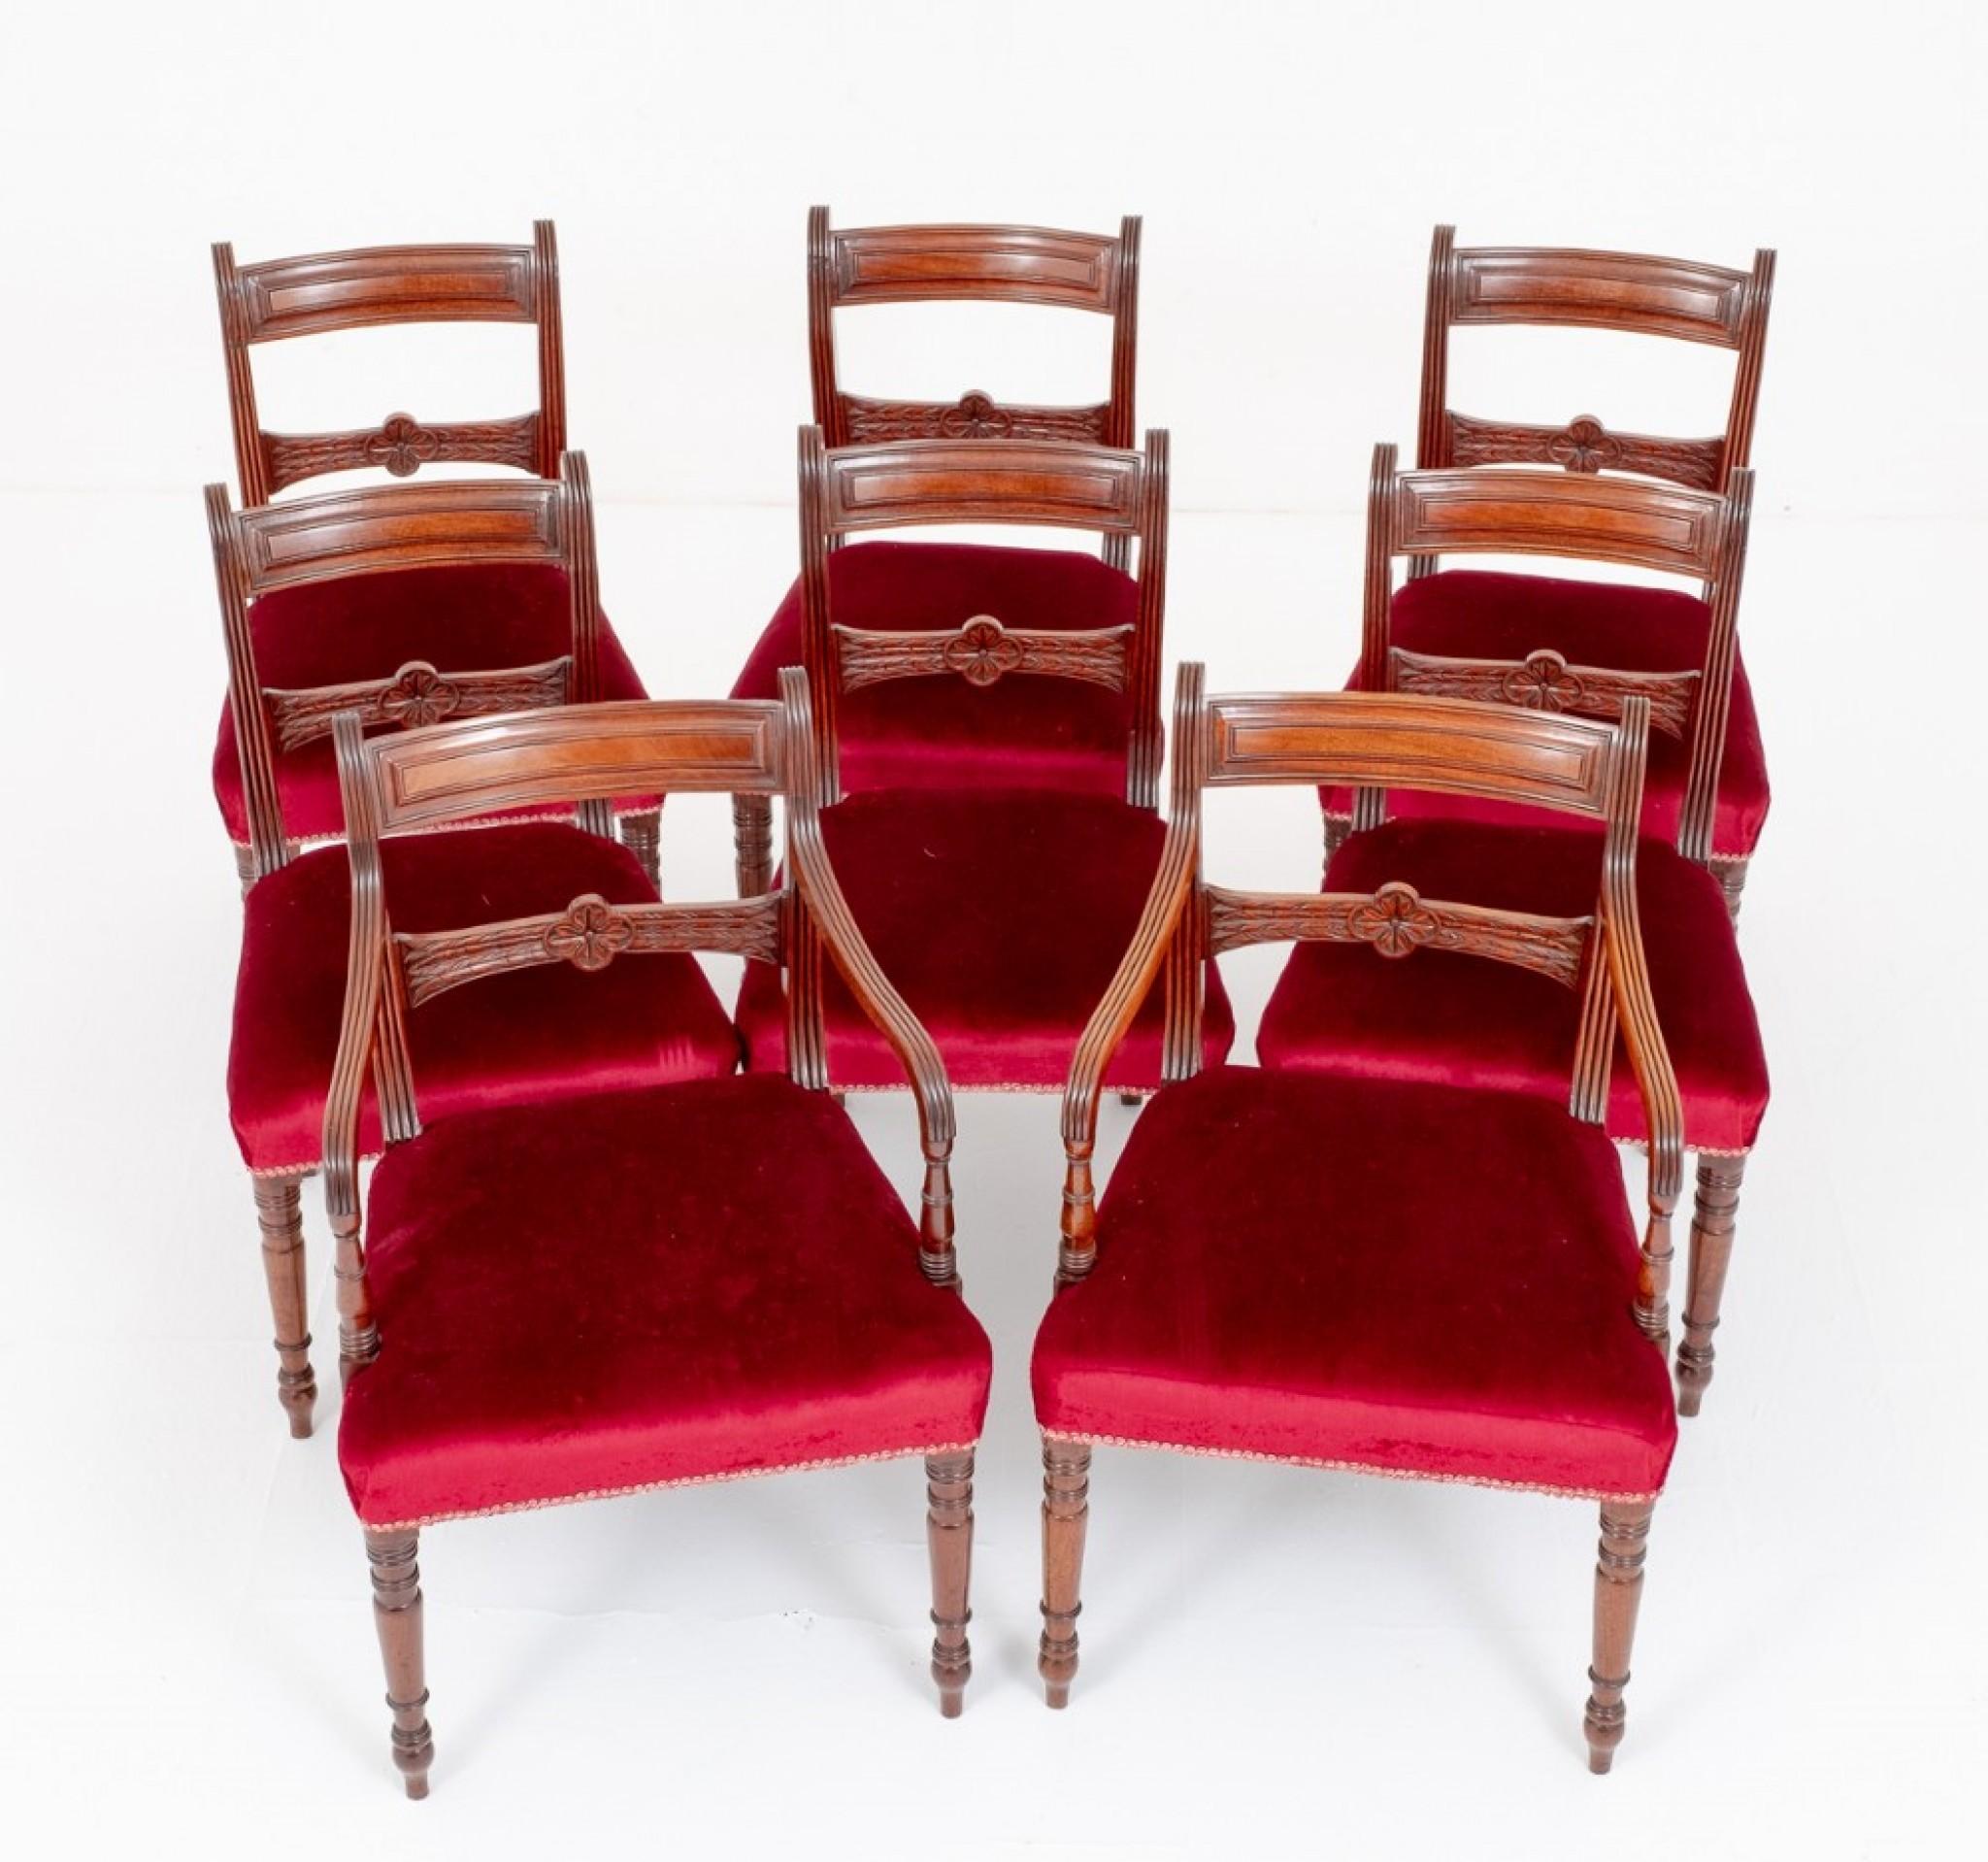 Bon ensemble de 8 (6 + 2) chaises de salle à manger Regency en acajou.
Elle repose sur des pieds avant tournés en anneau, typiques de la période Régence, les pieds arrière étant en forme de sabre.
Les sculpteurs ont des bras en forme avec des